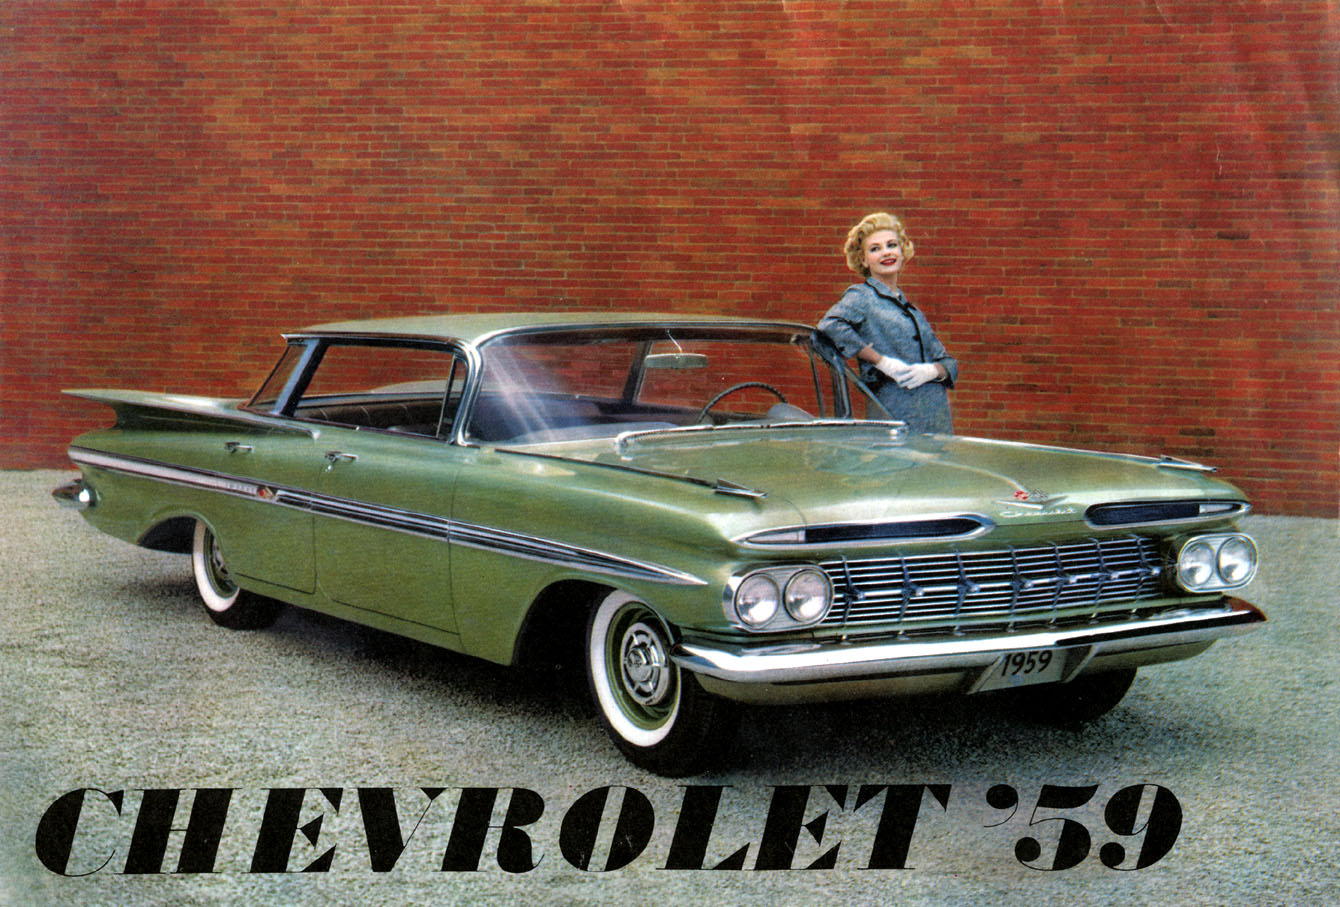 1959 Chervrolet Foldout-01